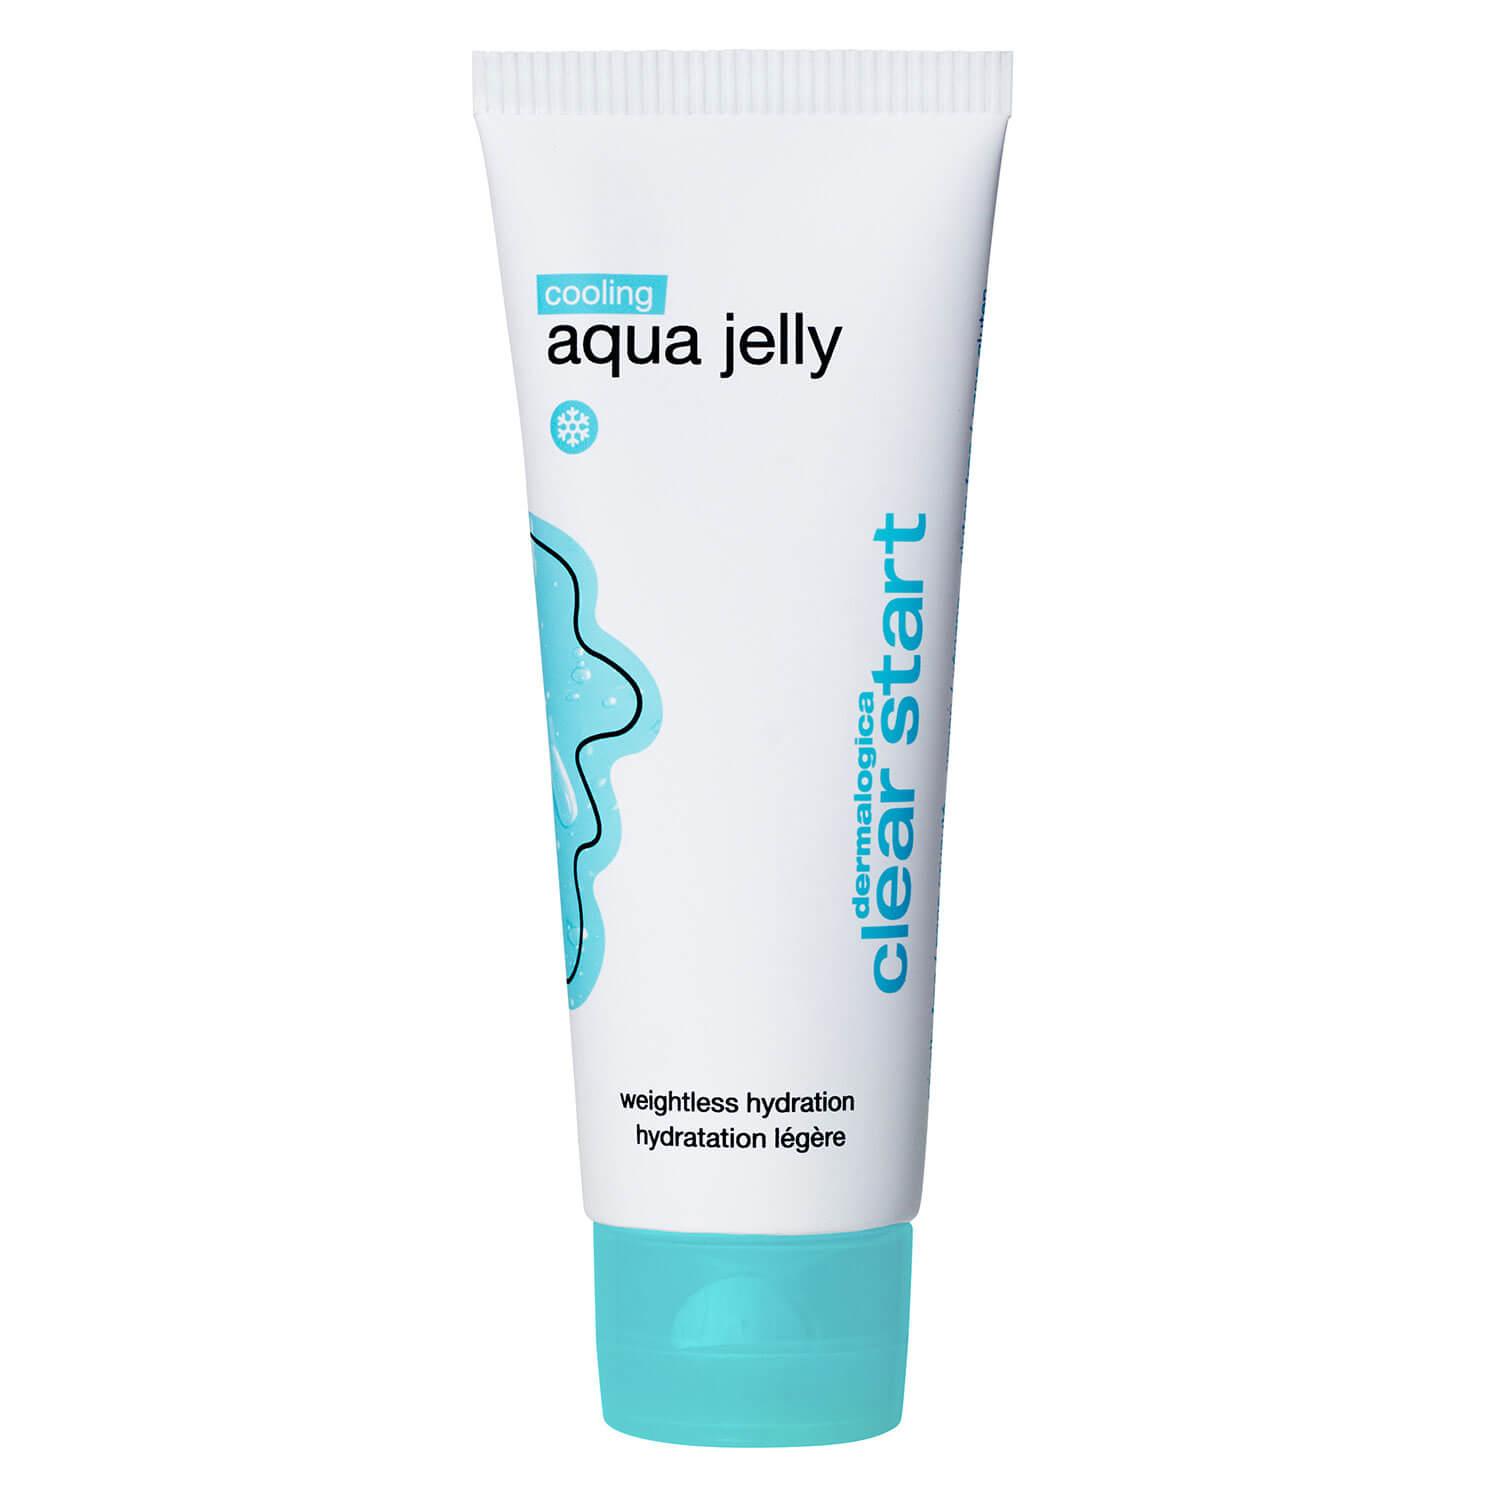 Moisturizers - Cooling Aqua Jelly